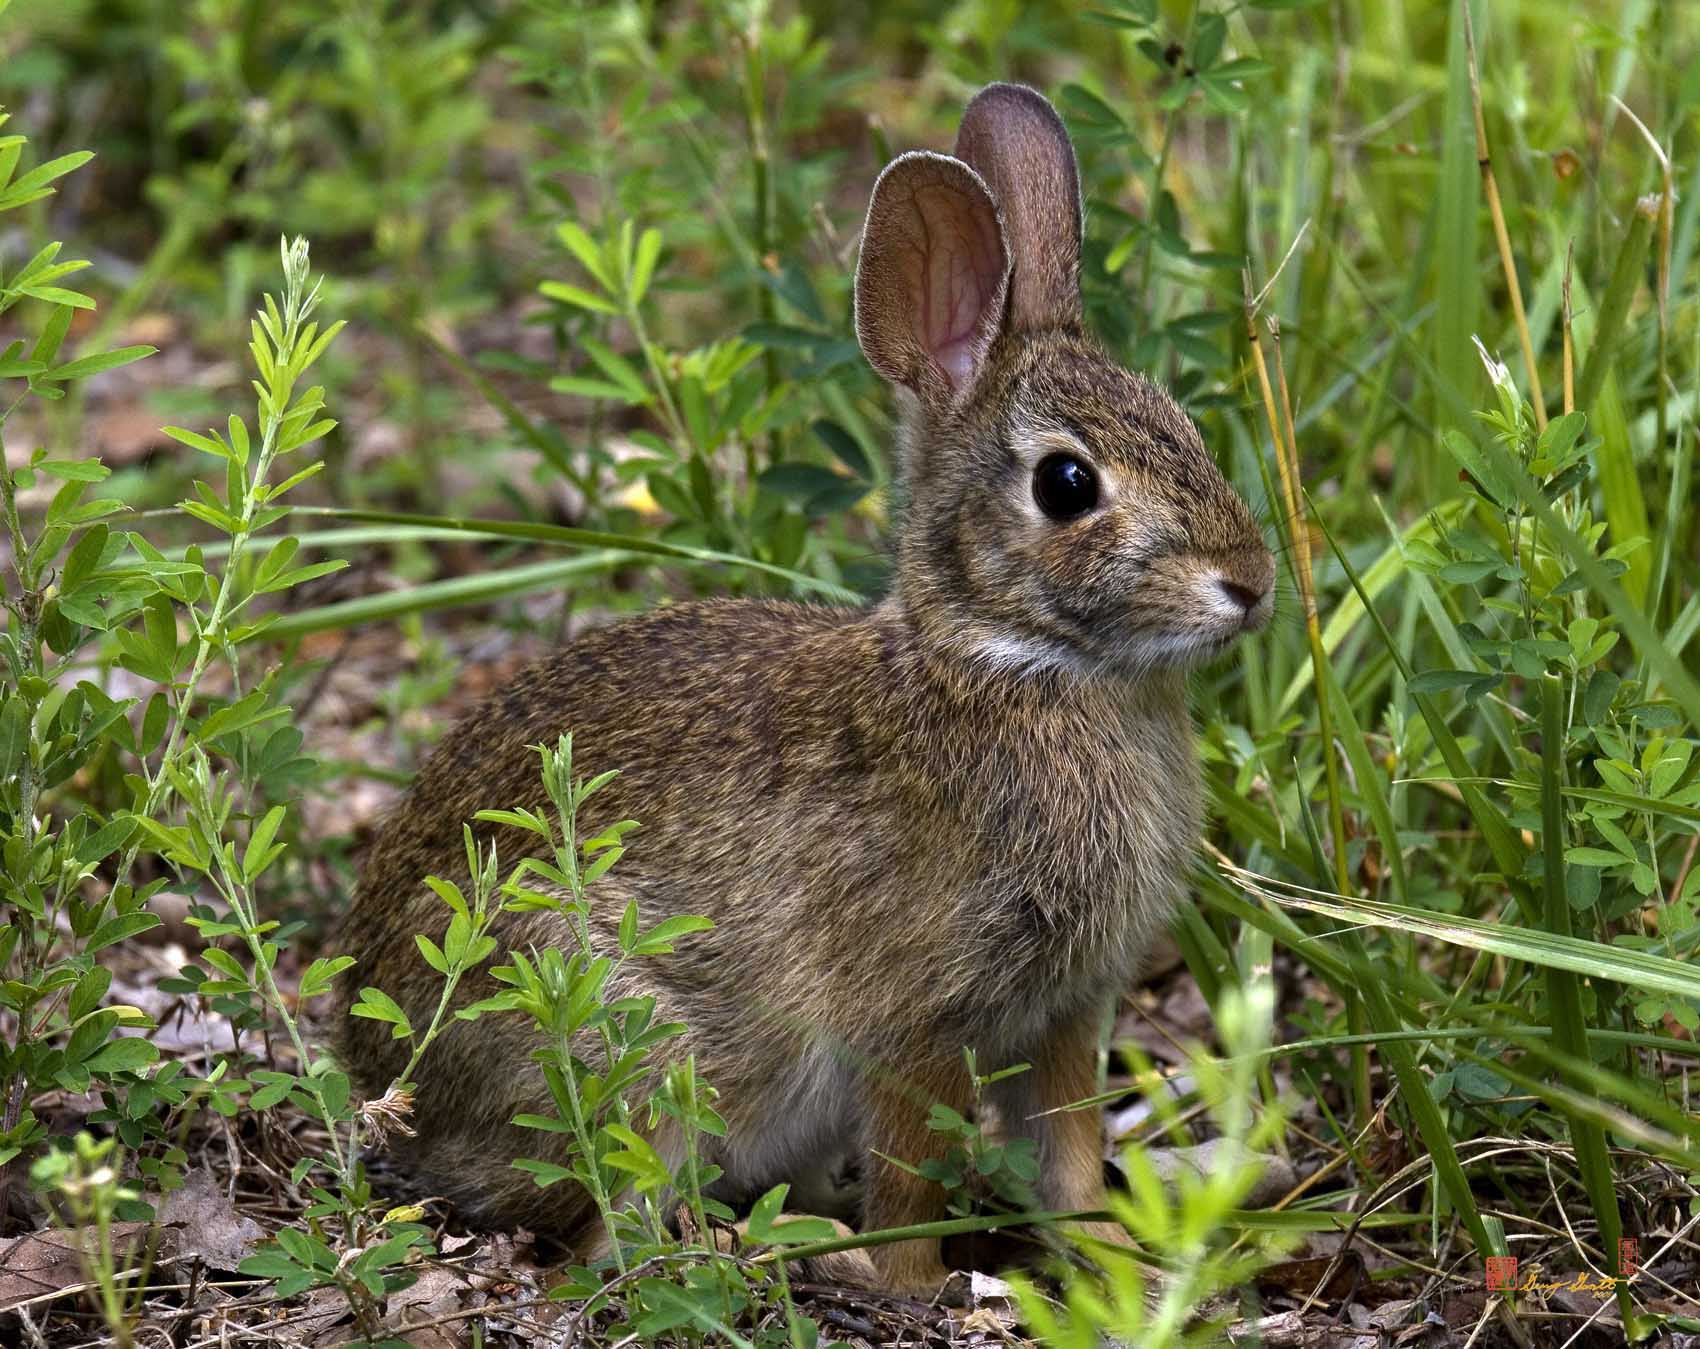 تصویر خرگوش زیبا در طبیعت مناسب صفحه کامپیوتر 